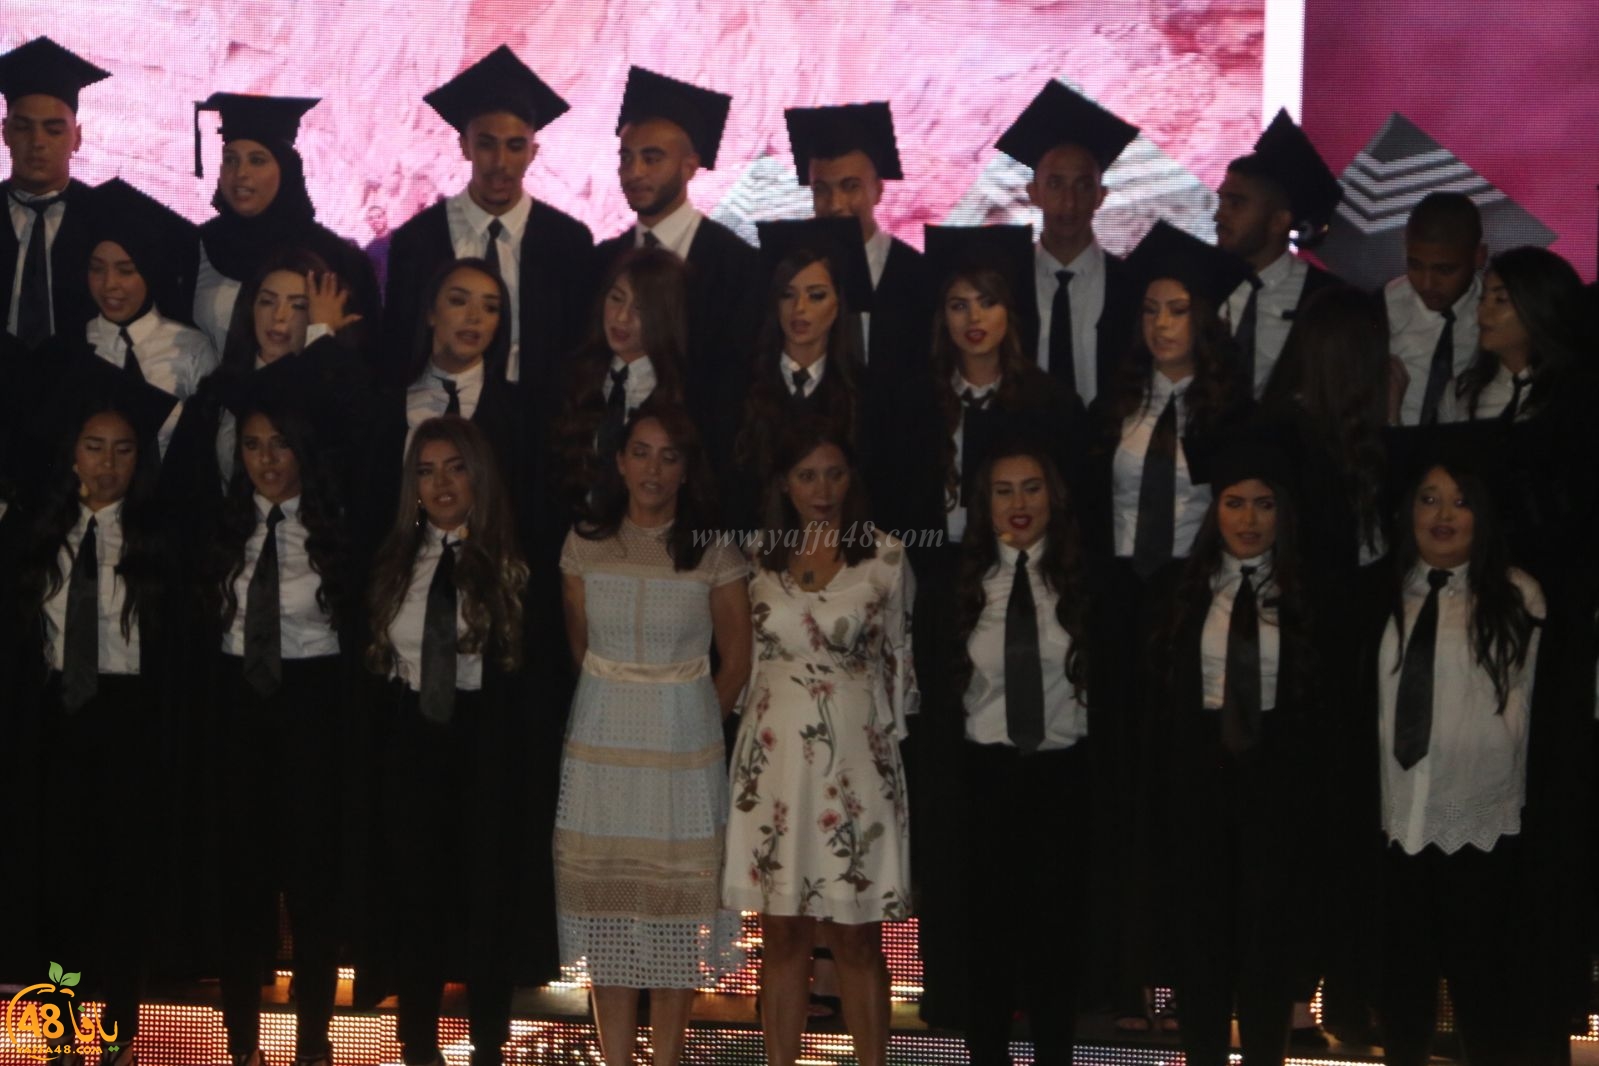 بالفيديو: مدرسة أجيال الثانوية بيافا تحتفل بتخريج فوجها الحادي عشر 